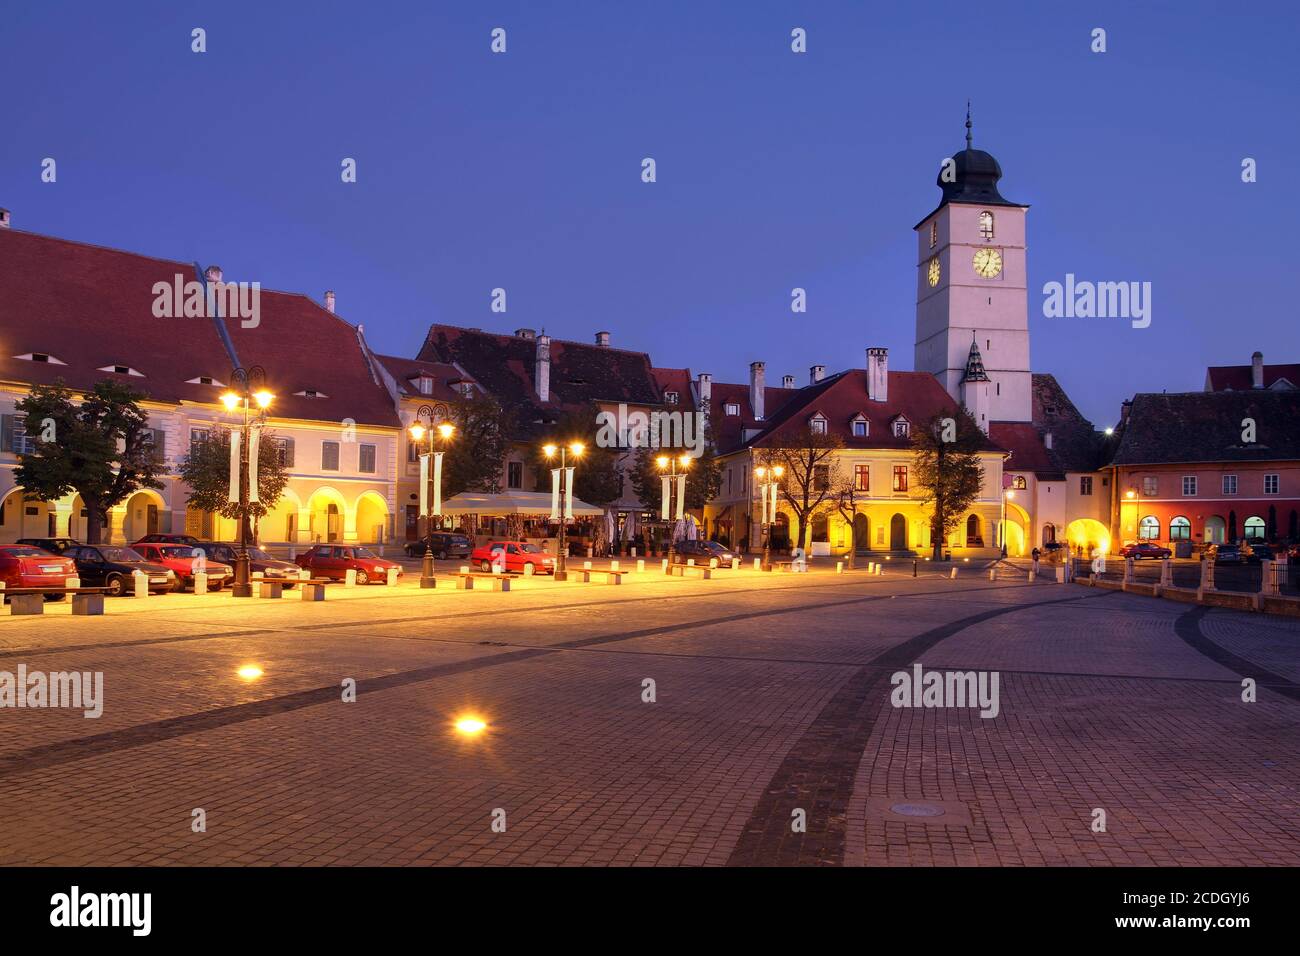 Scène nocturne de la petite place (Piata Mica) dans la ville historique de Sibiu, Roumanie. Banque D'Images